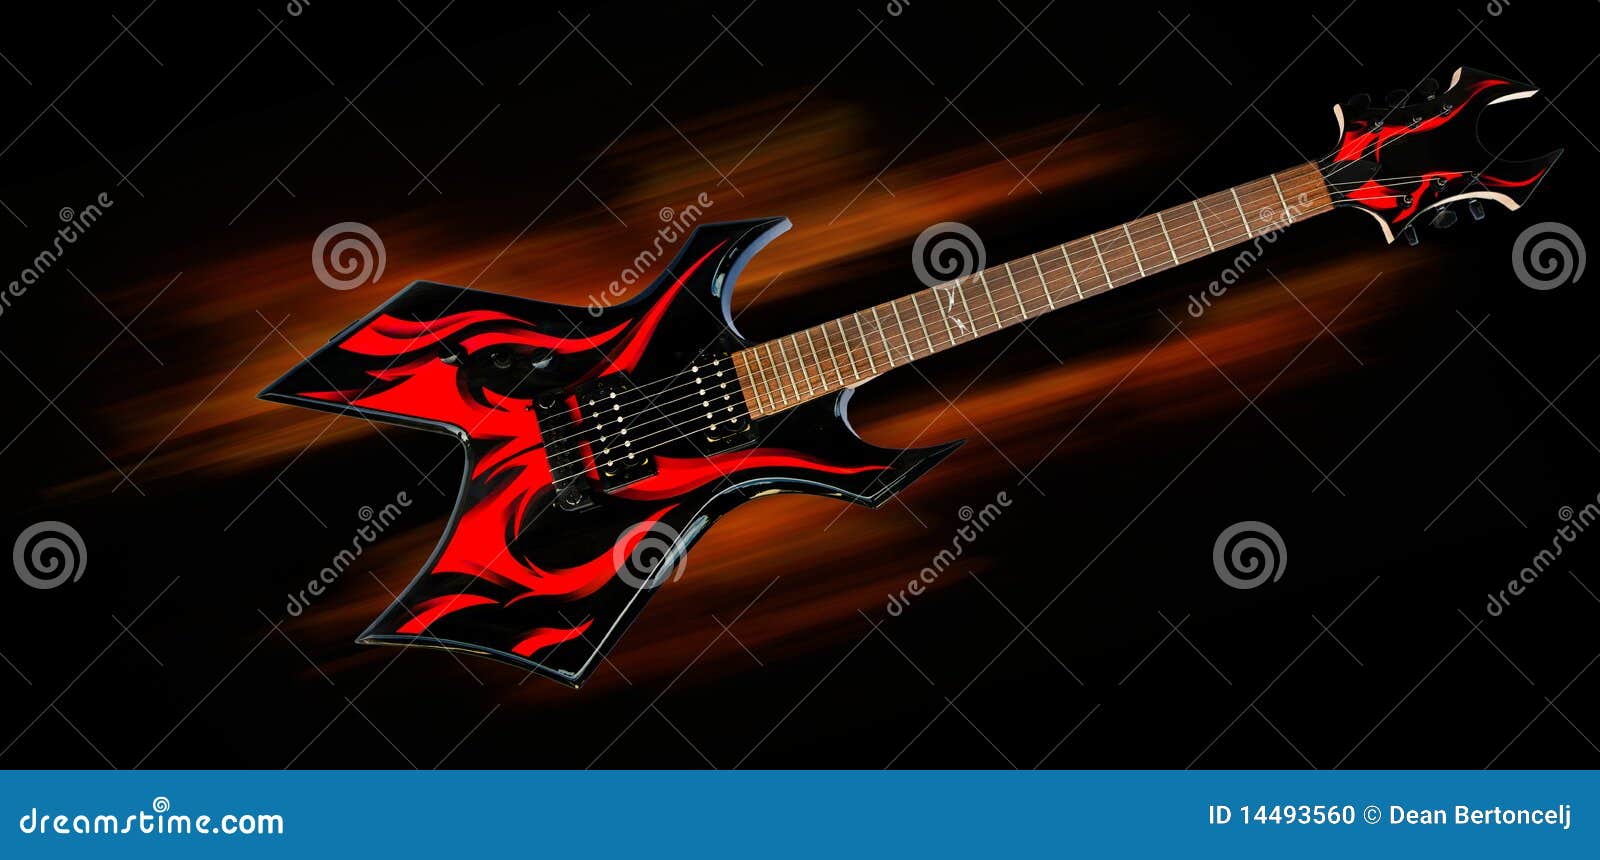 heavy metal fire guitar